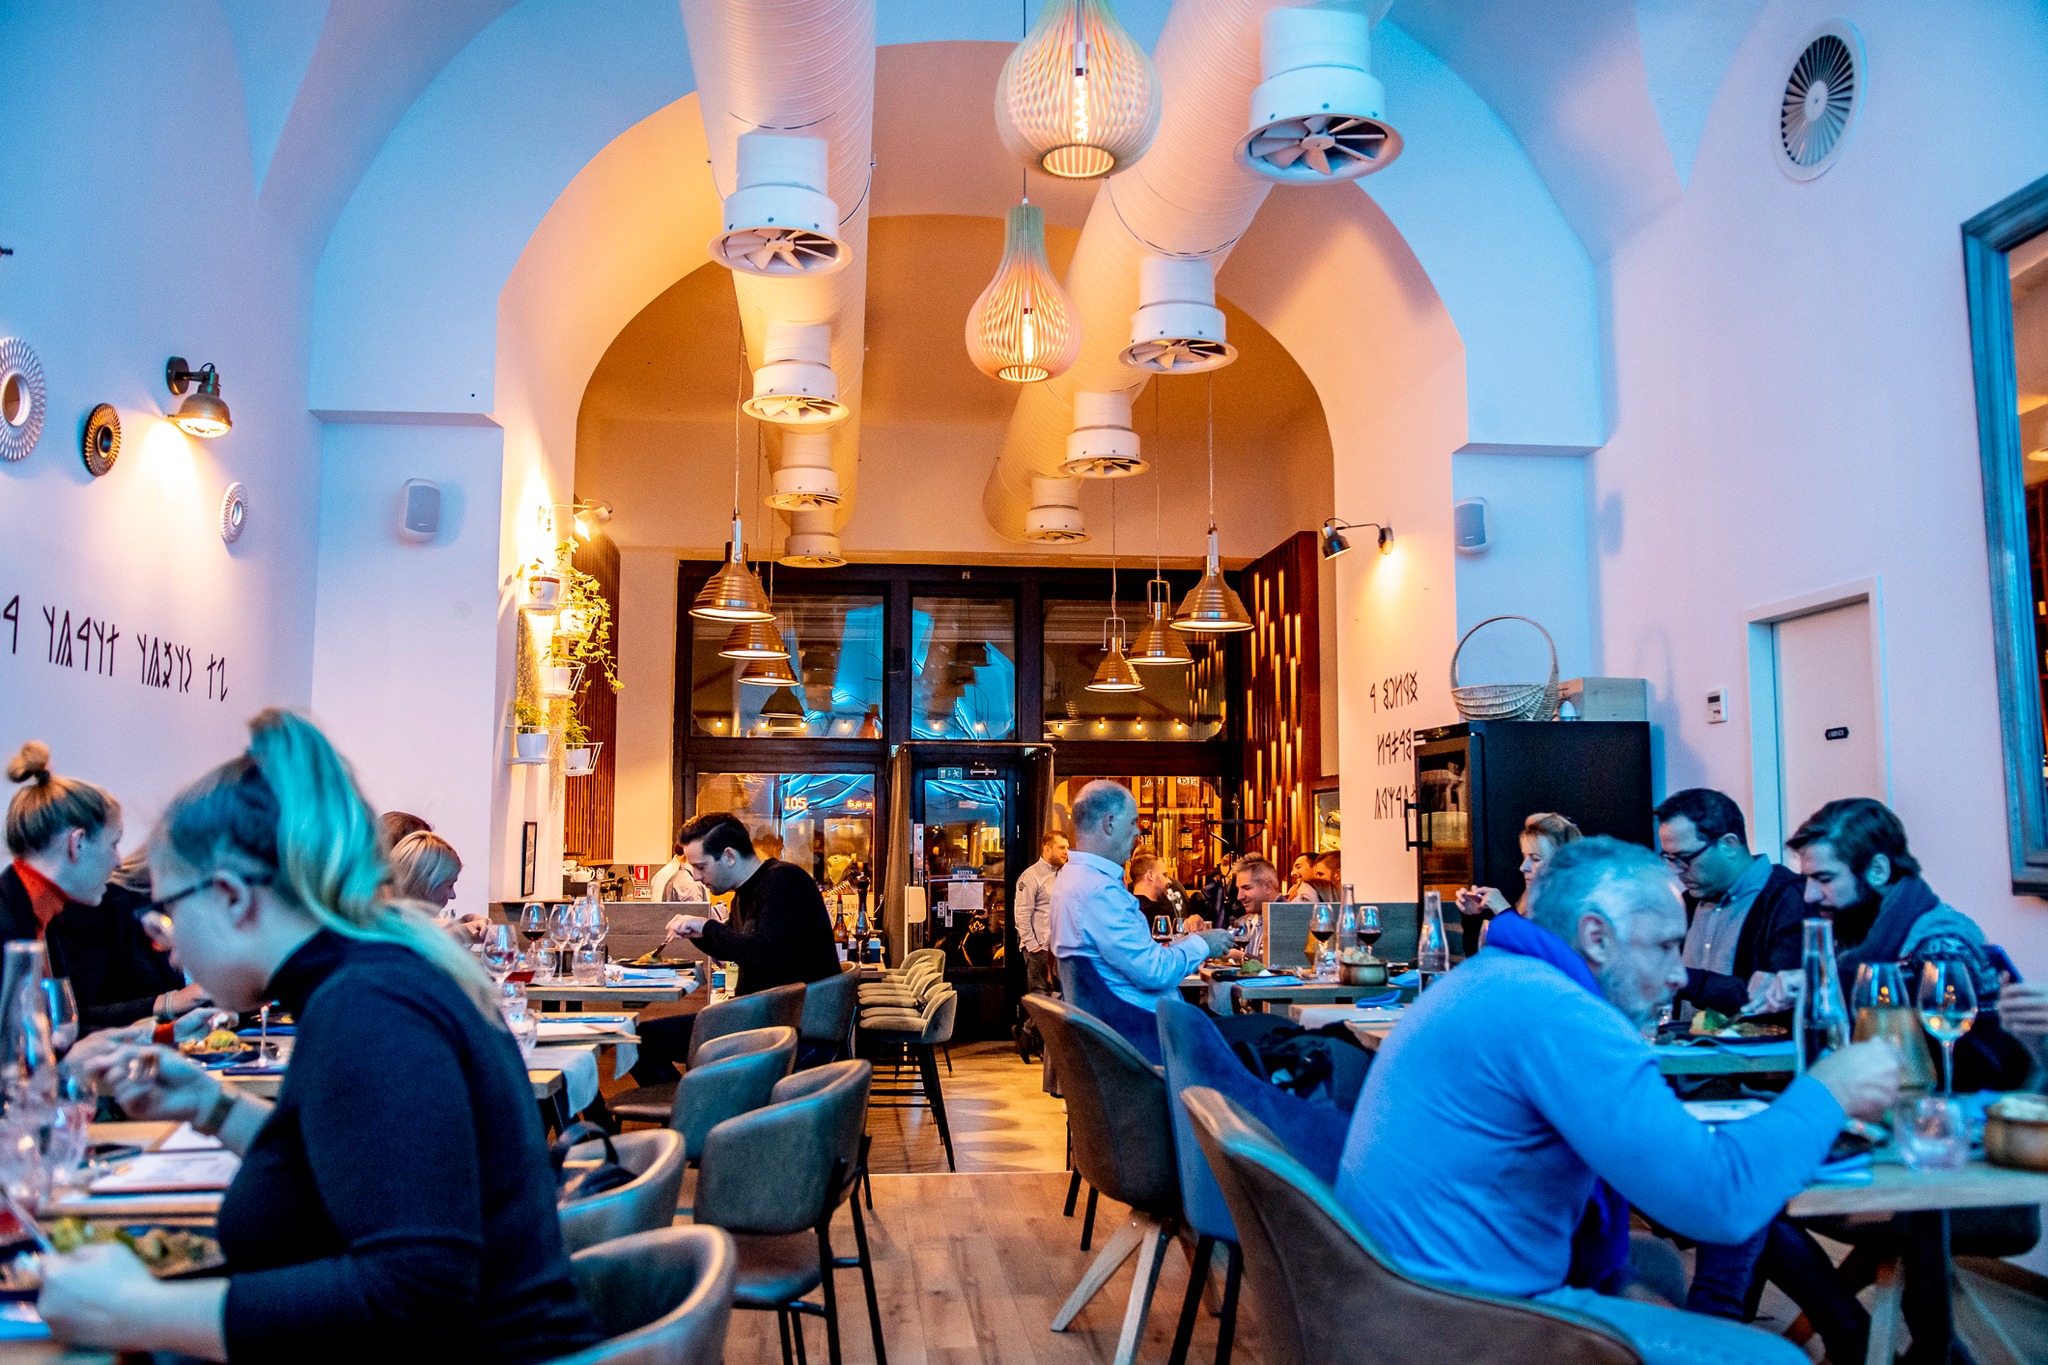 Töltött káposzta került a budapesti székely étterem burgerébe - Blikk